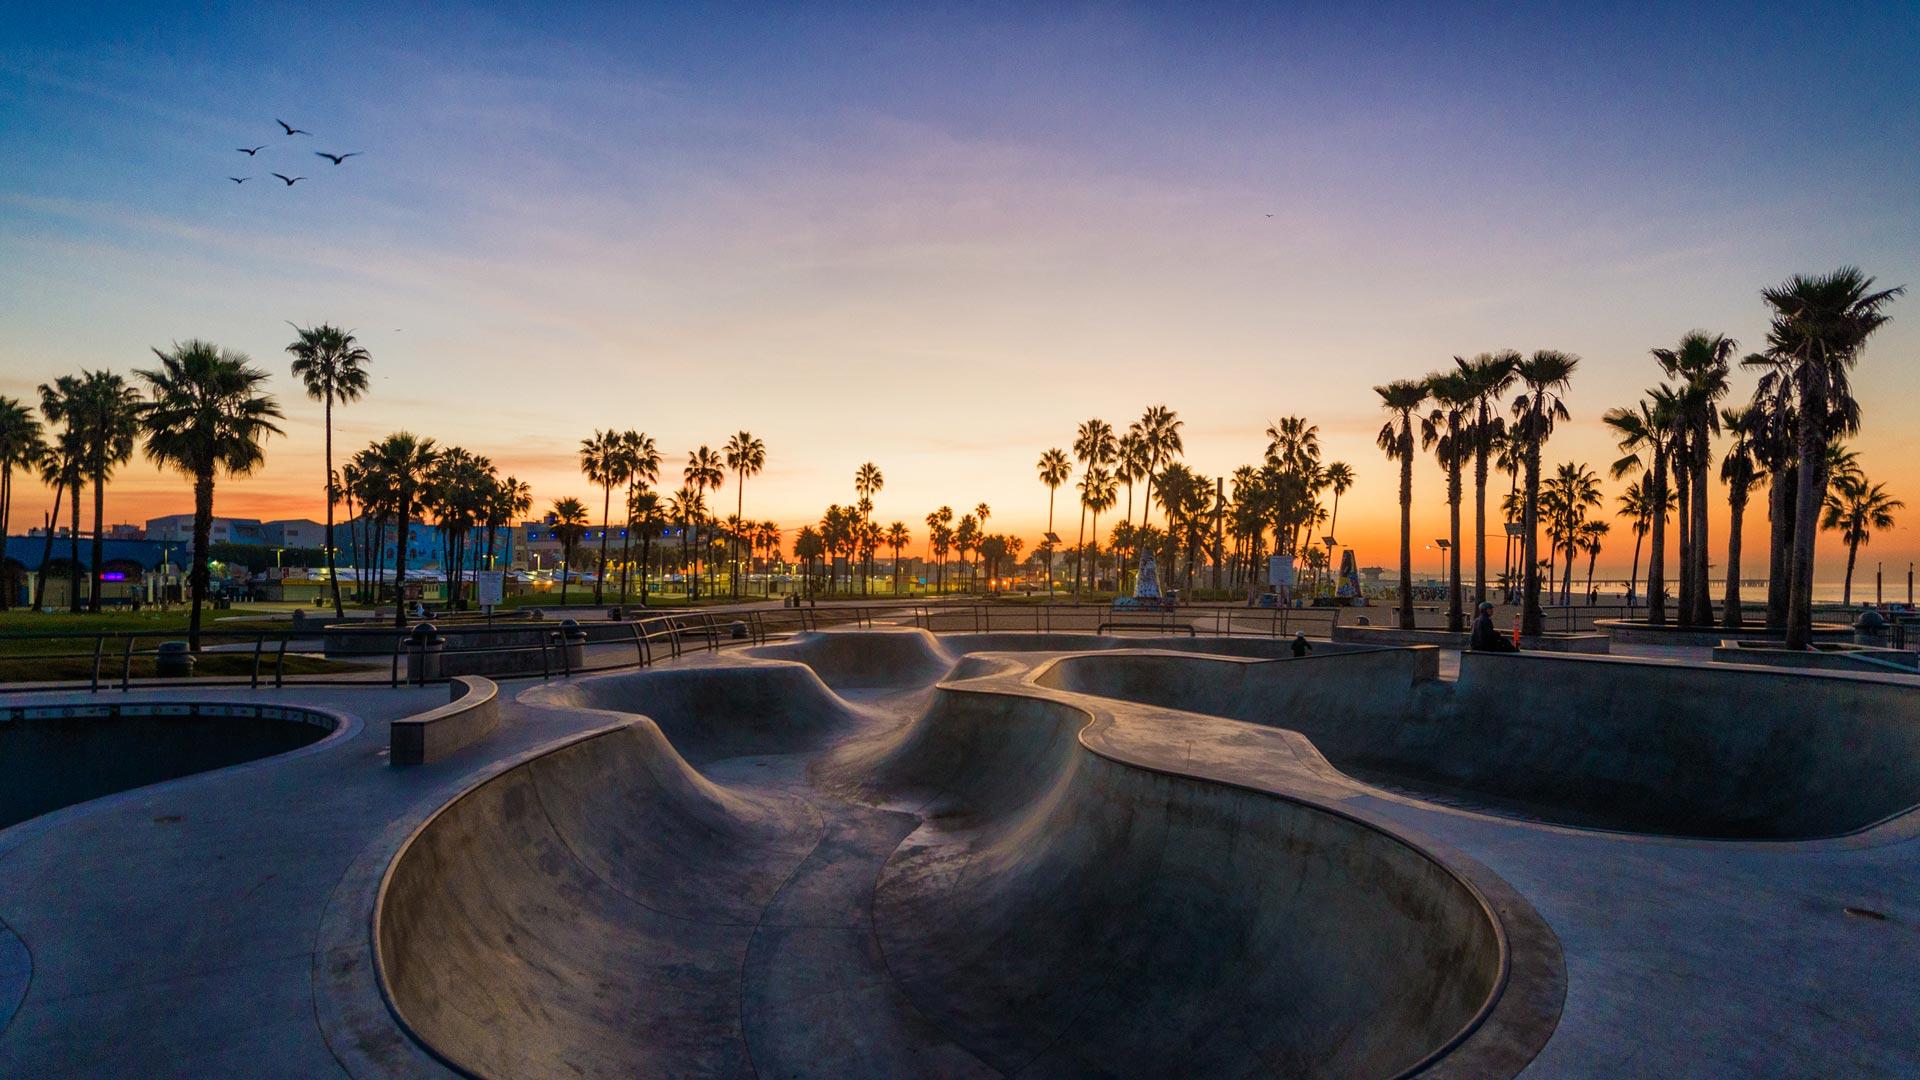 Venice Beach Skatepark at sunset